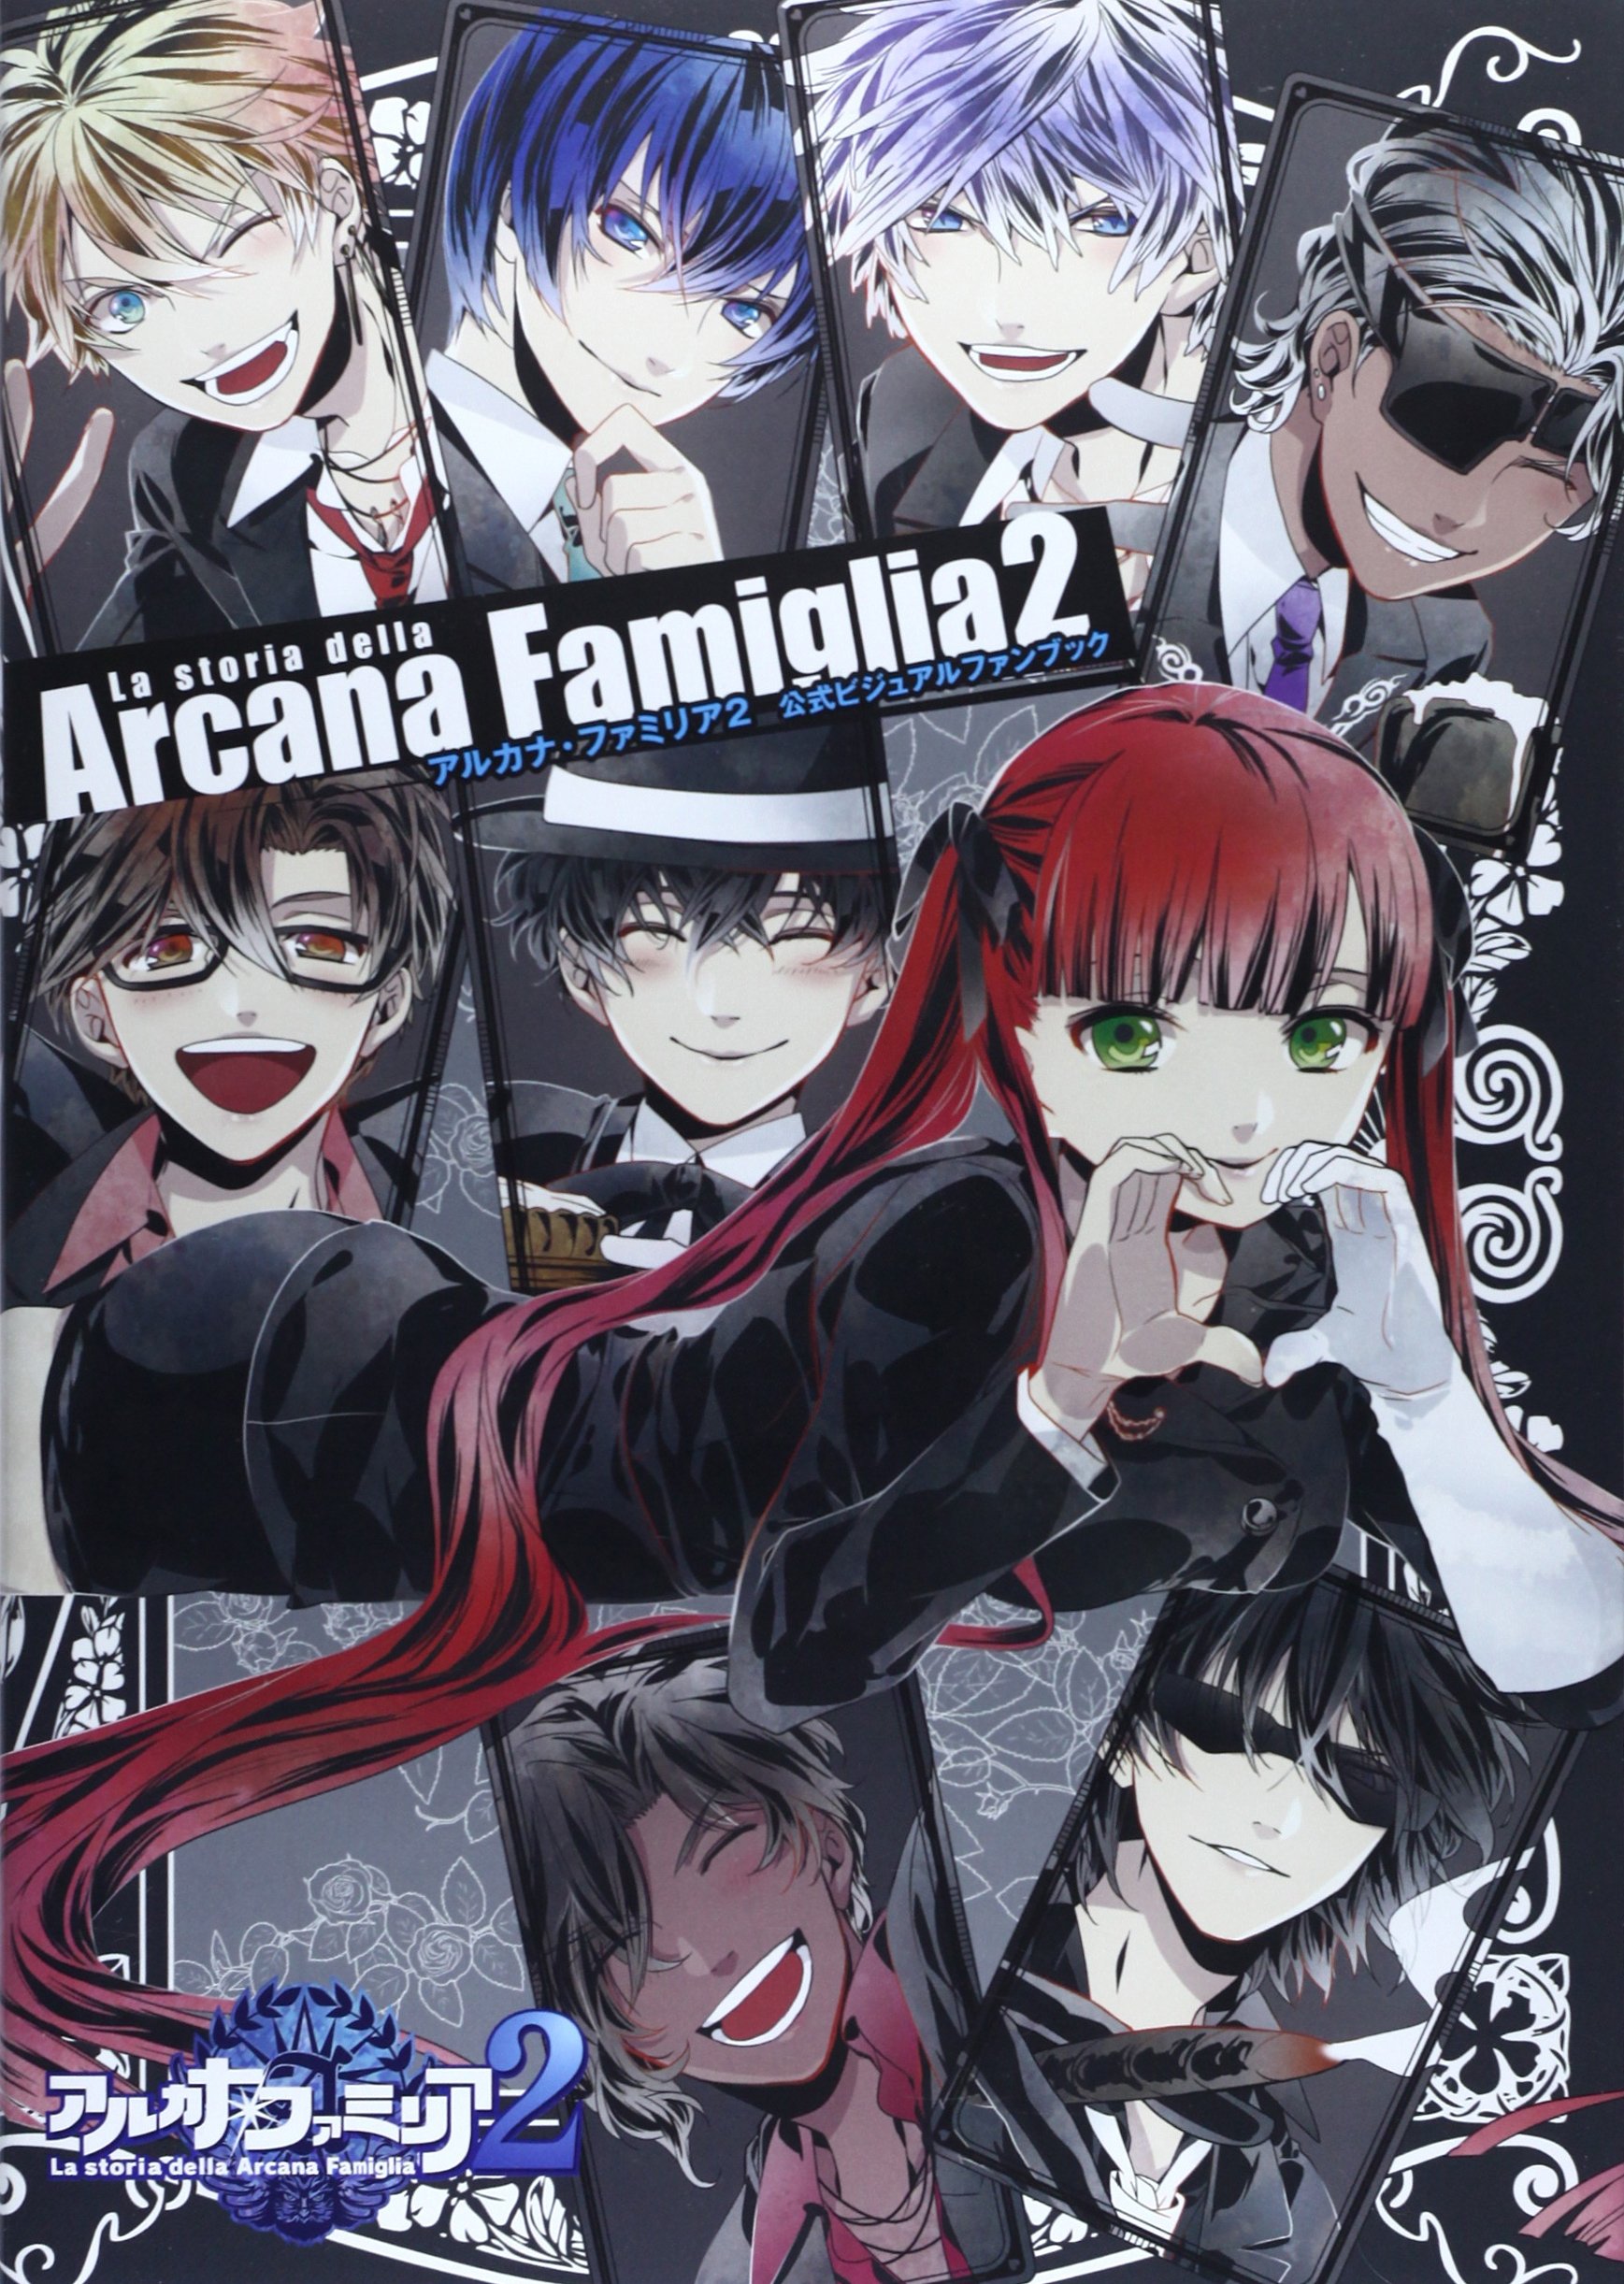 La Storia Della Arcana Famiglia 2 Official Visual Fan Book Anime Art Book Online Com